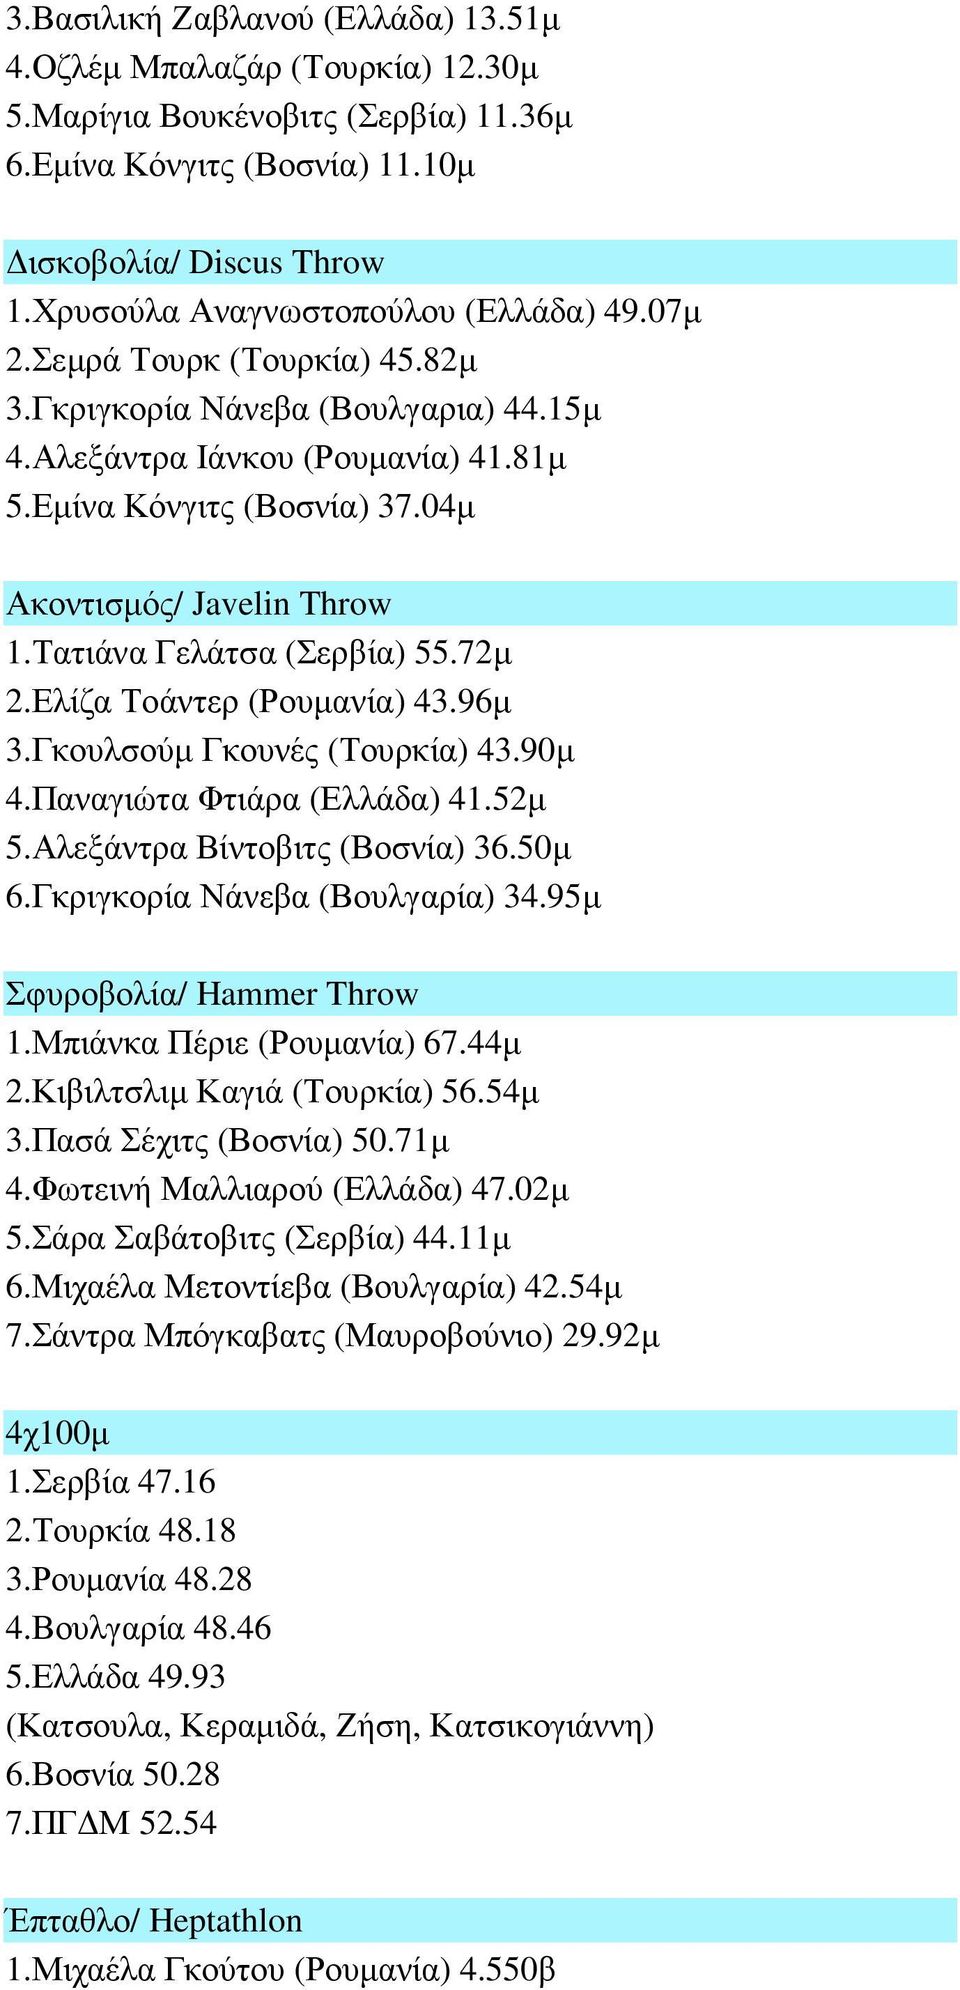 04µ Ακοντισµός/ Javelin Throw 1.Τατιάνα Γελάτσα (Σερβία) 55.72µ 2.Ελίζα Τοάντερ (Ρουµανία) 43.96µ 3.Γκουλσούµ Γκουνές (Τουρκία) 43.90µ 4.Παναγιώτα Φτιάρα (Ελλάδα) 41.52µ 5.